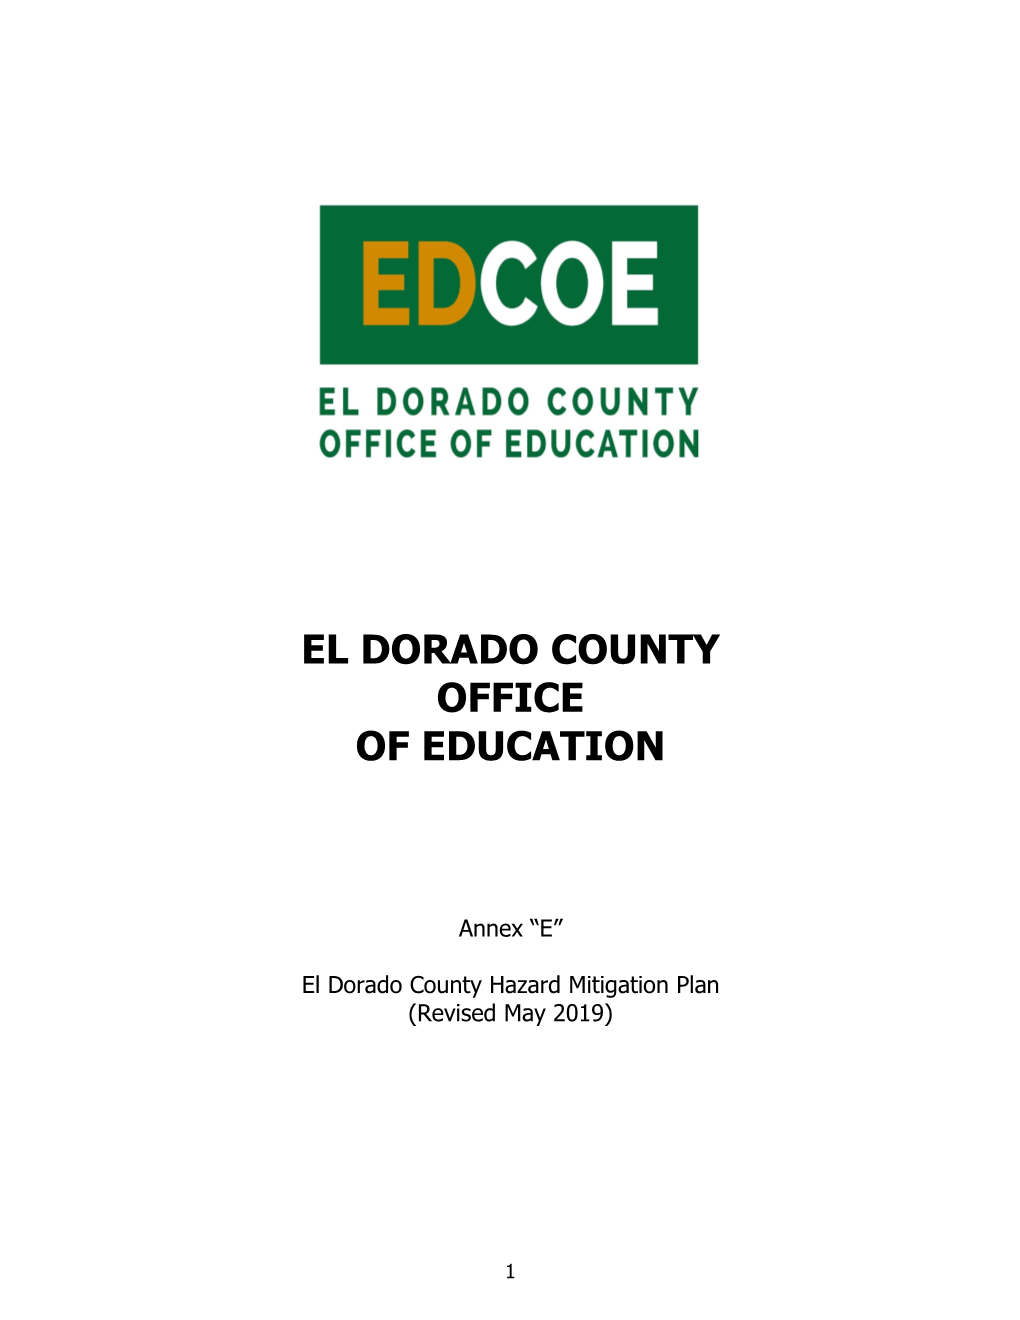 El Dorado County Office of Education